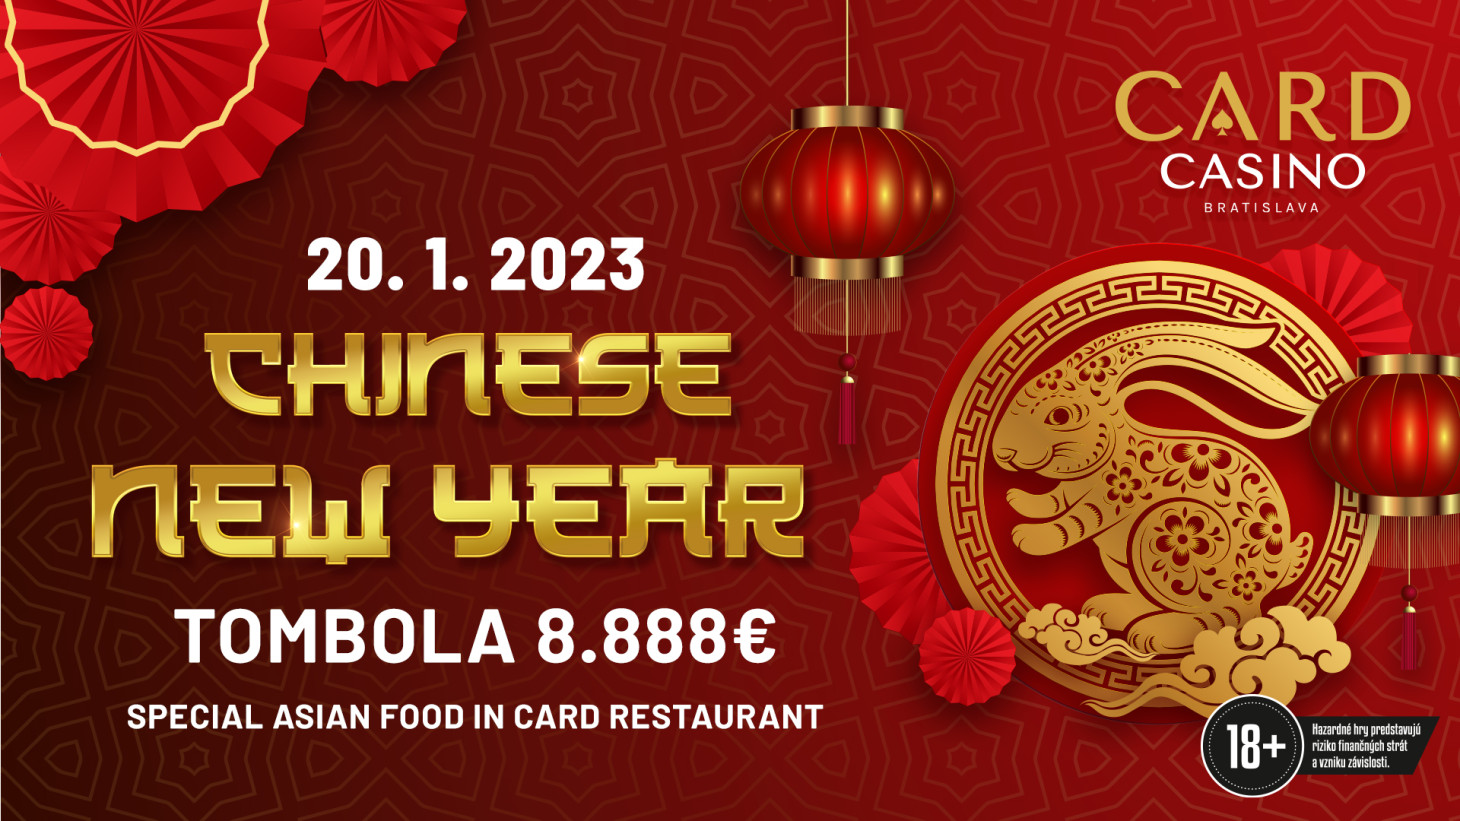 Príďte osláviť Čínsky Nový rok Zajaca s parádnou tombolou o 8.888€